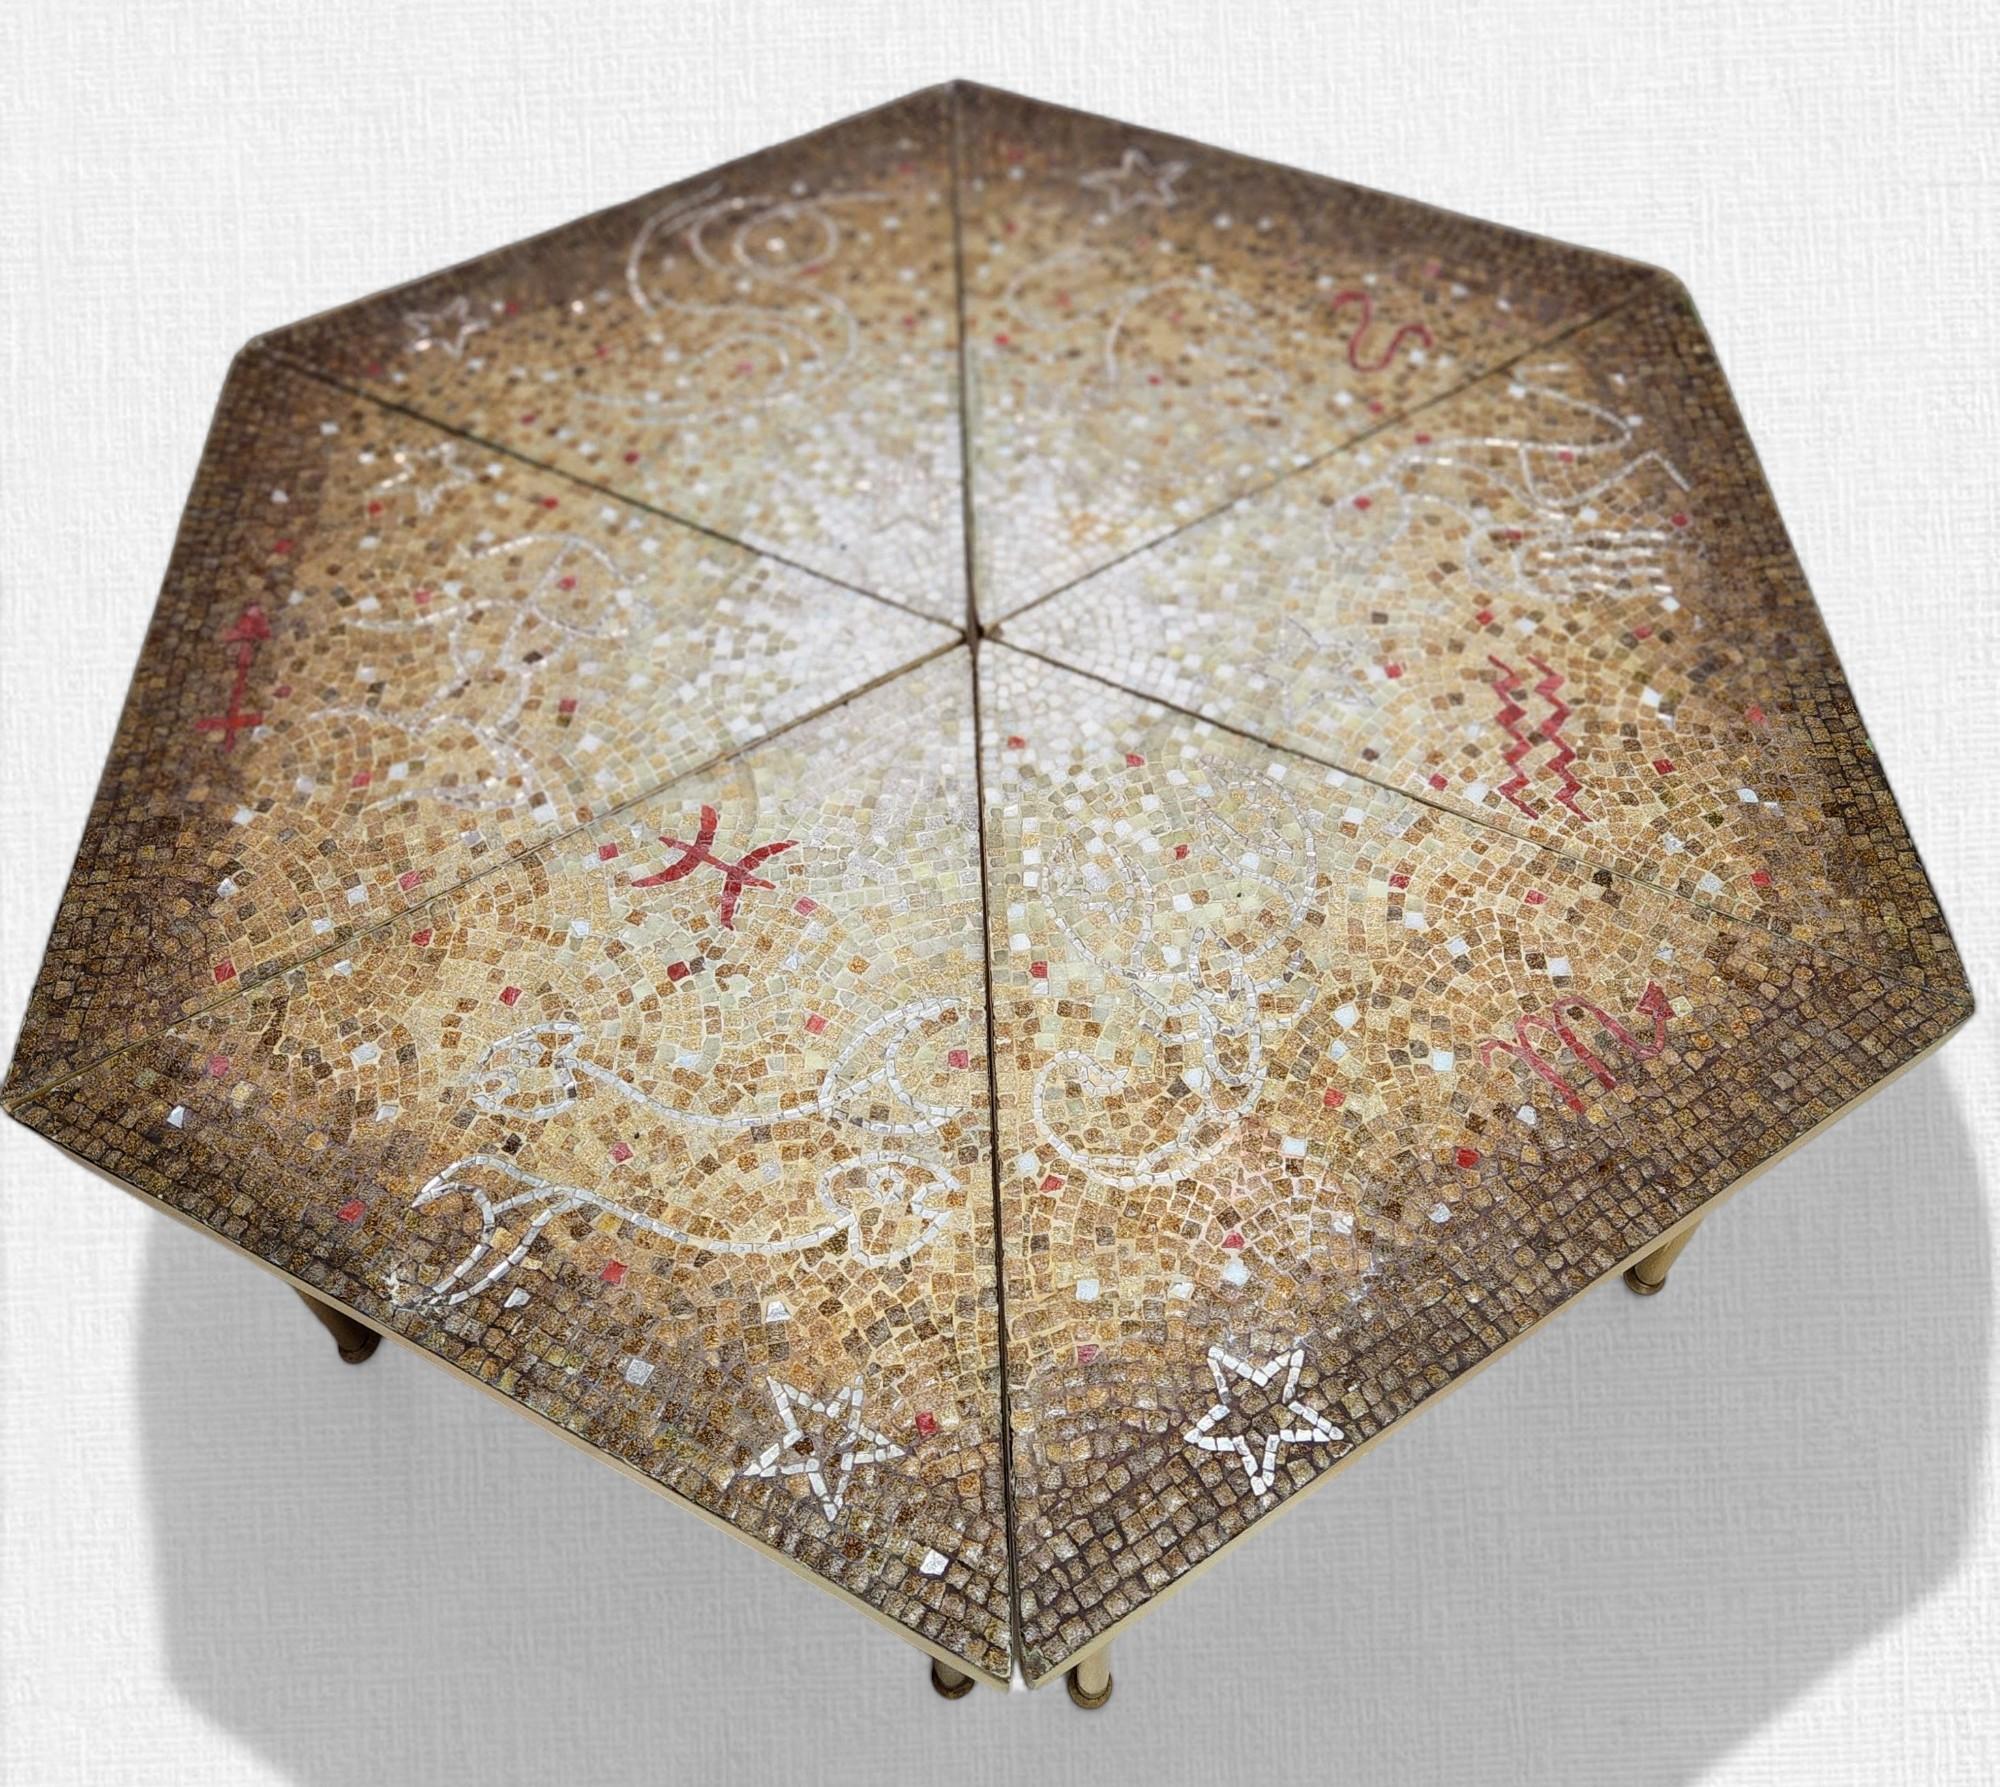 Sechsteiliger Studio Mosaik Tisch von Genaro Alvarez bestehend aus. Aufwendig eingelegte Glasmosaikmotive, die den 6 Sternbildern des Zodiacs nachempfunden sind, auf sechs dreieckigen, austauschbaren Mahagonisockeln, die in den 1950er Jahren im